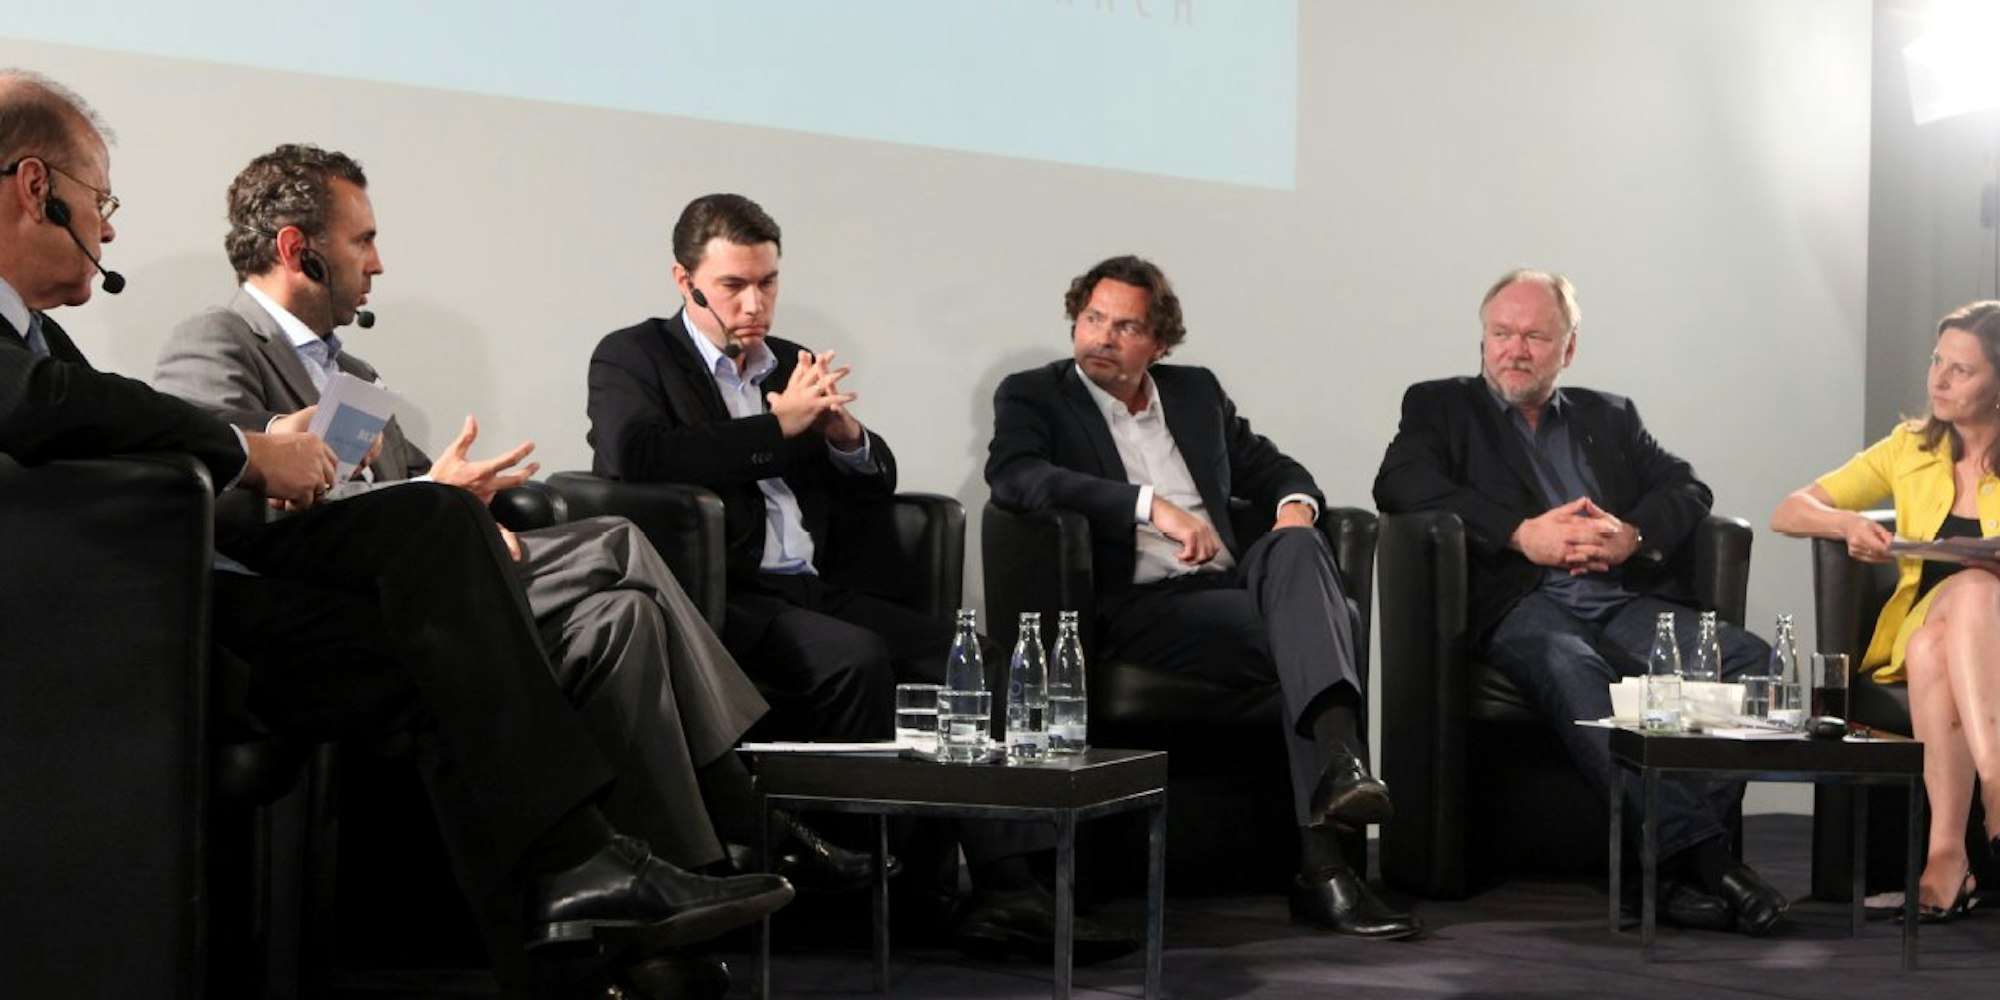 Peter Pauls (von links), Thomas Jarzombek, Oliver Eckert, Rolf Schwartmann, Joachim Paul und Anné Schwarzkopf diskutierten im studio dumont.